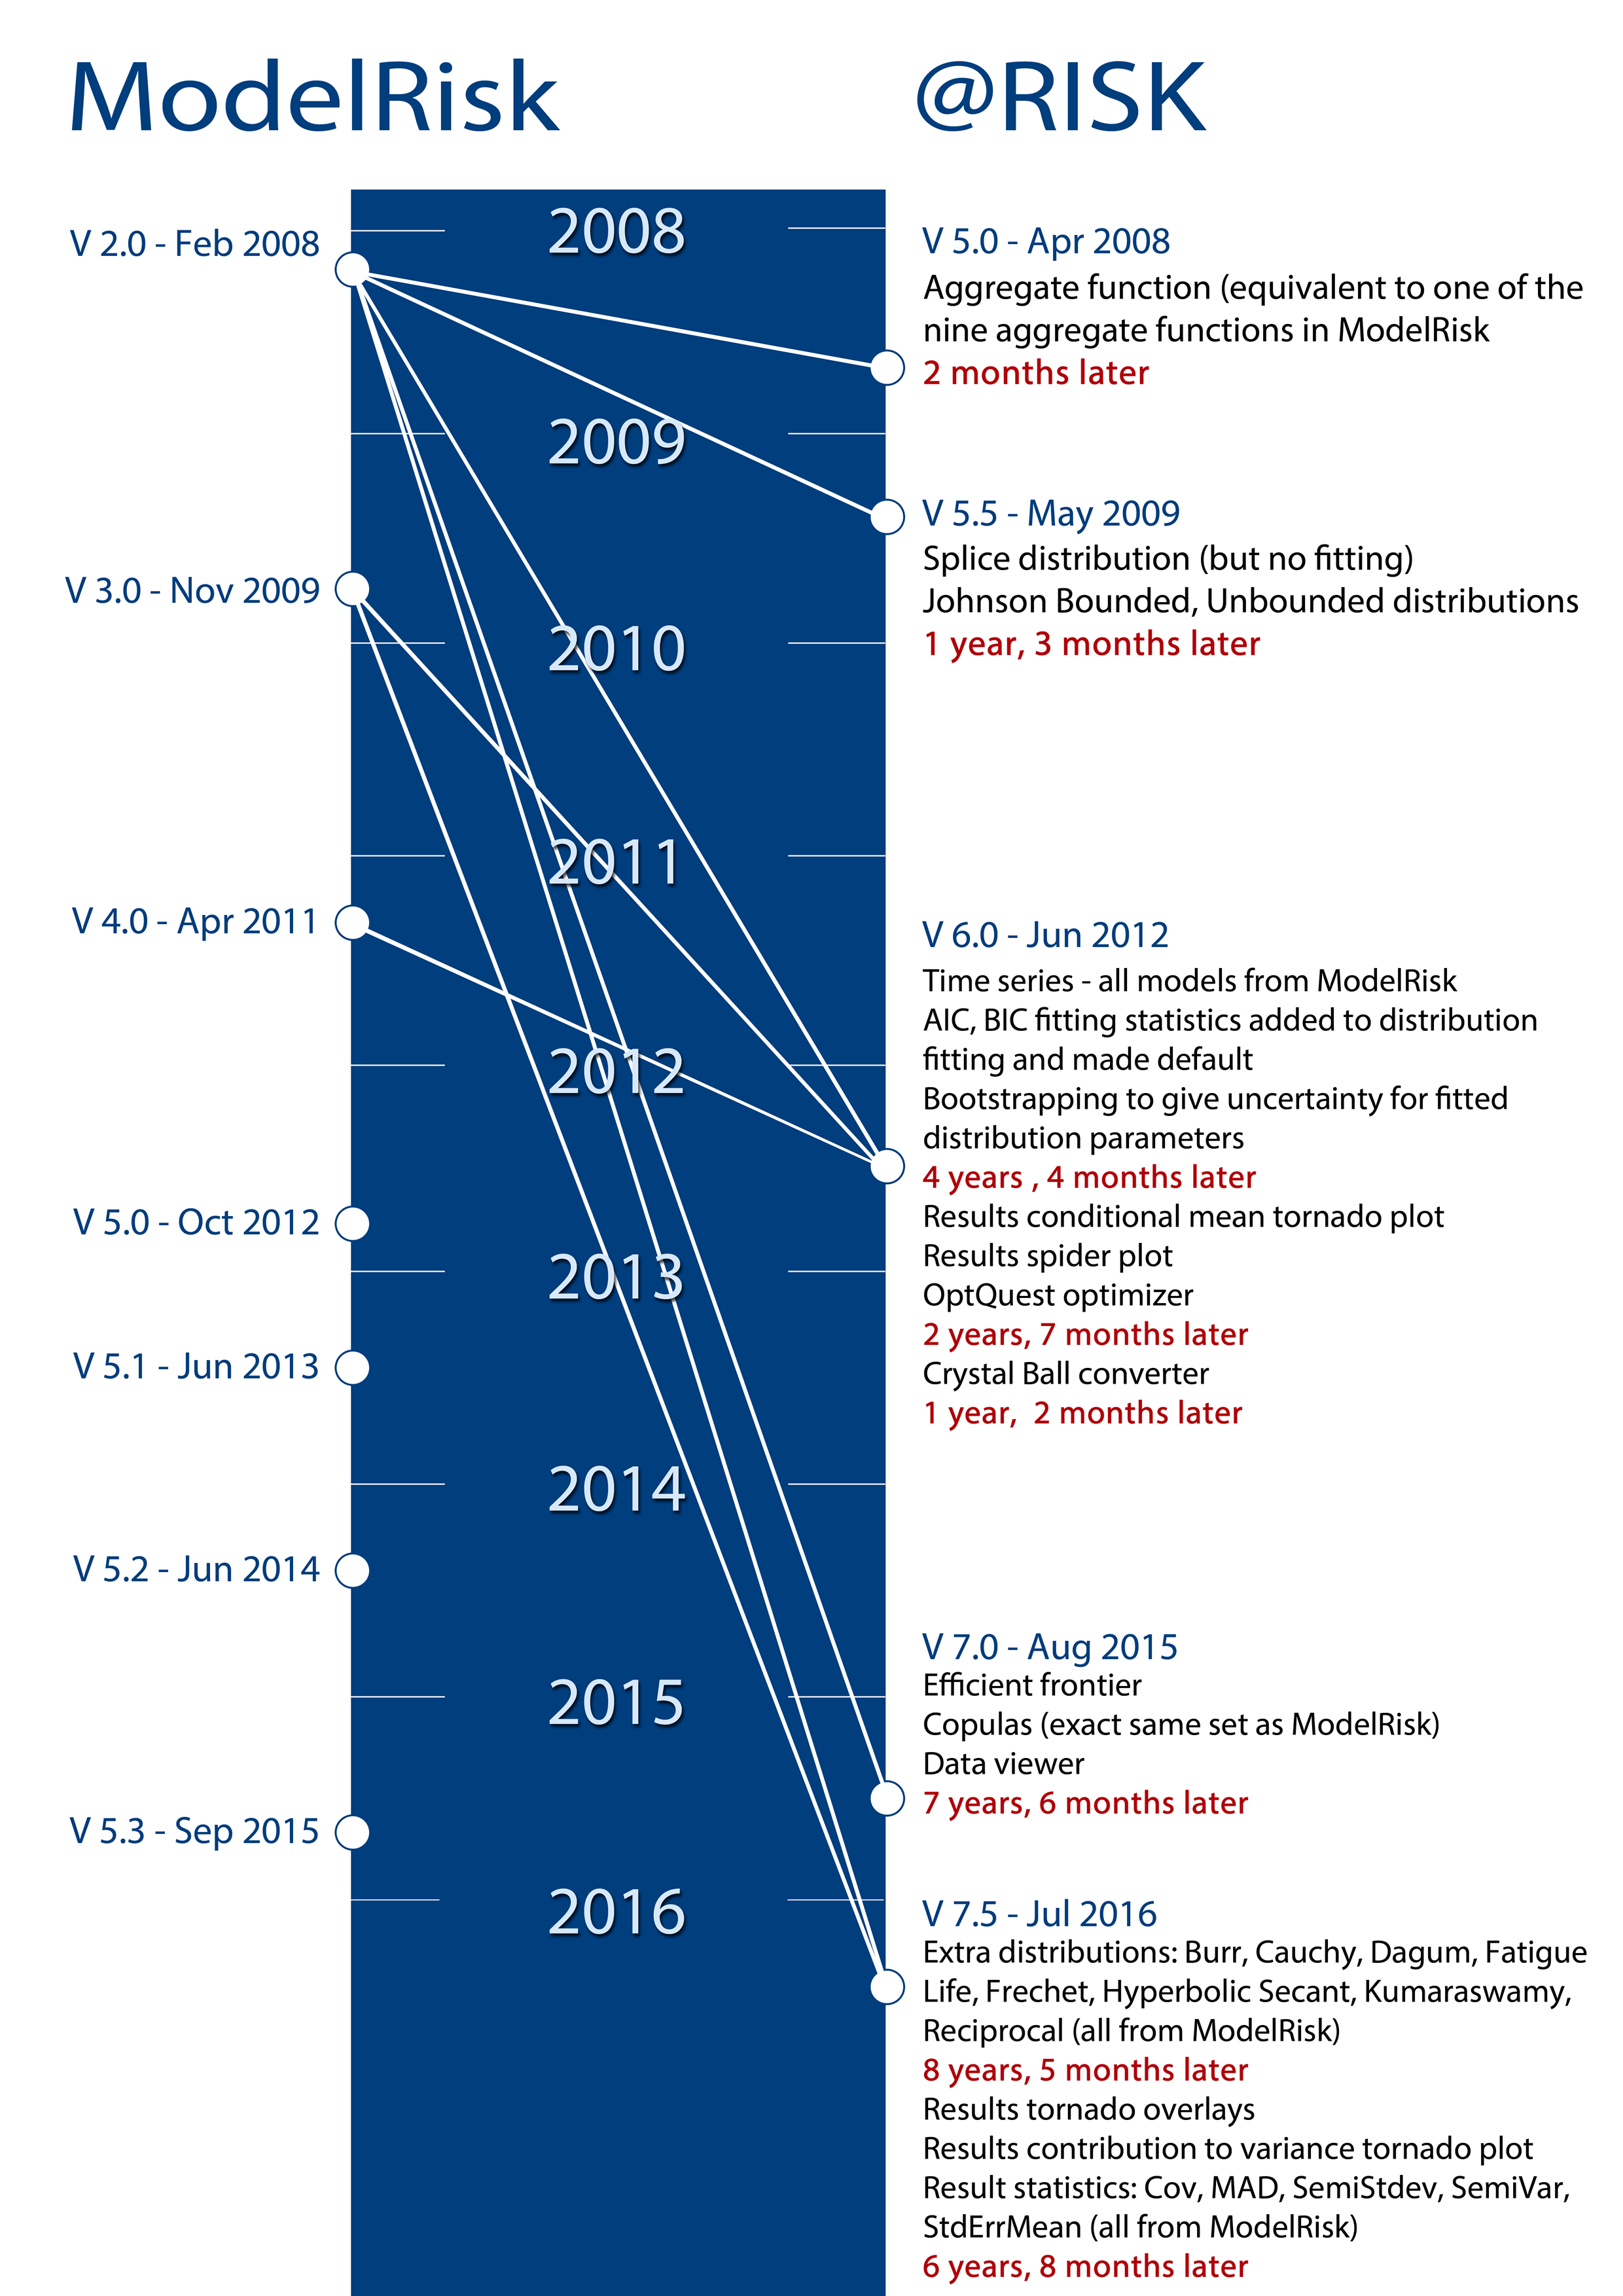 ModelRisk timeline compared to at risk